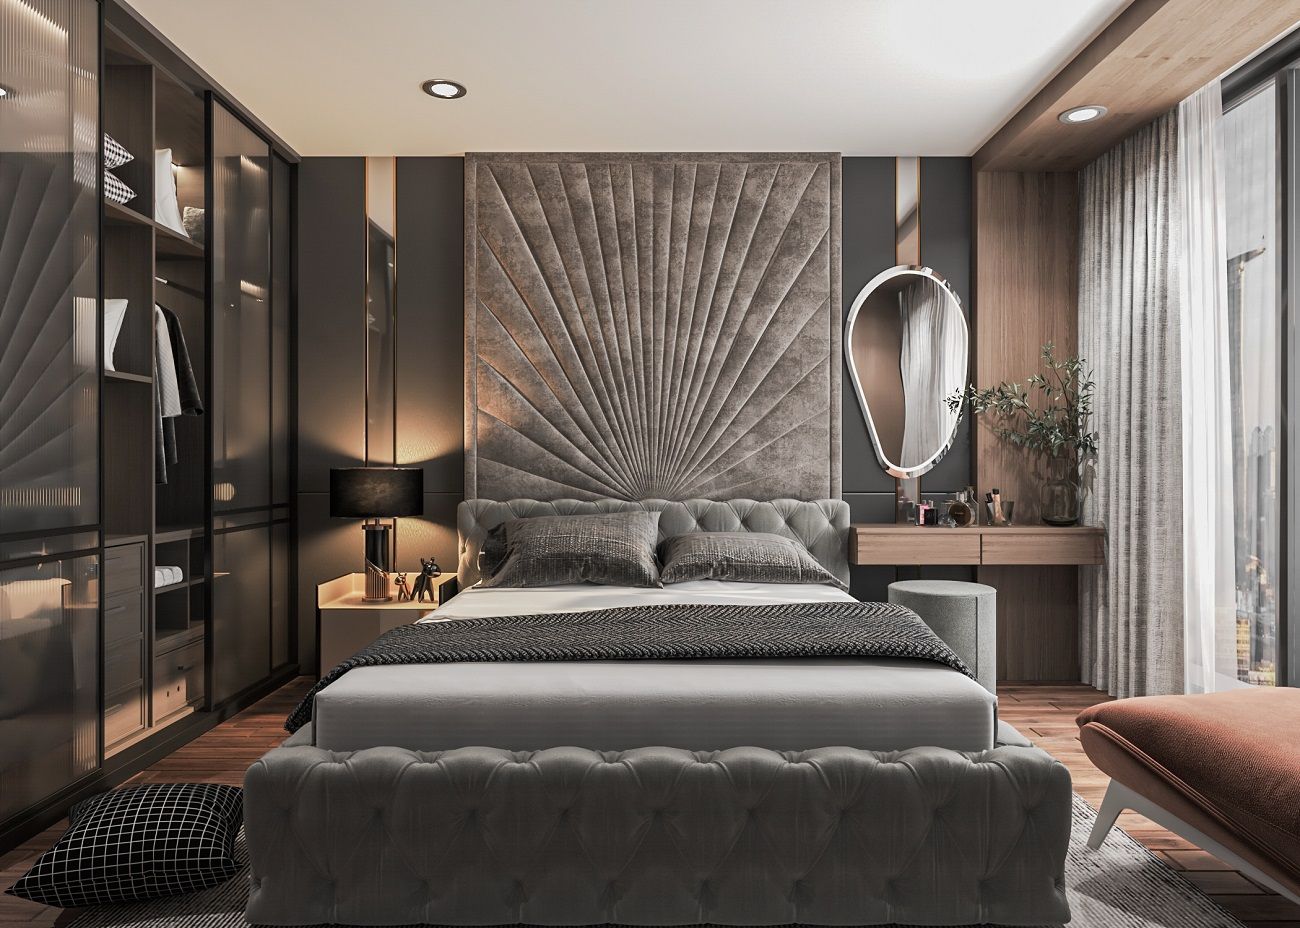 Phòng ngủ 14m2 gam màu xám tối tạo cảm giác thanh lịch và quý phái